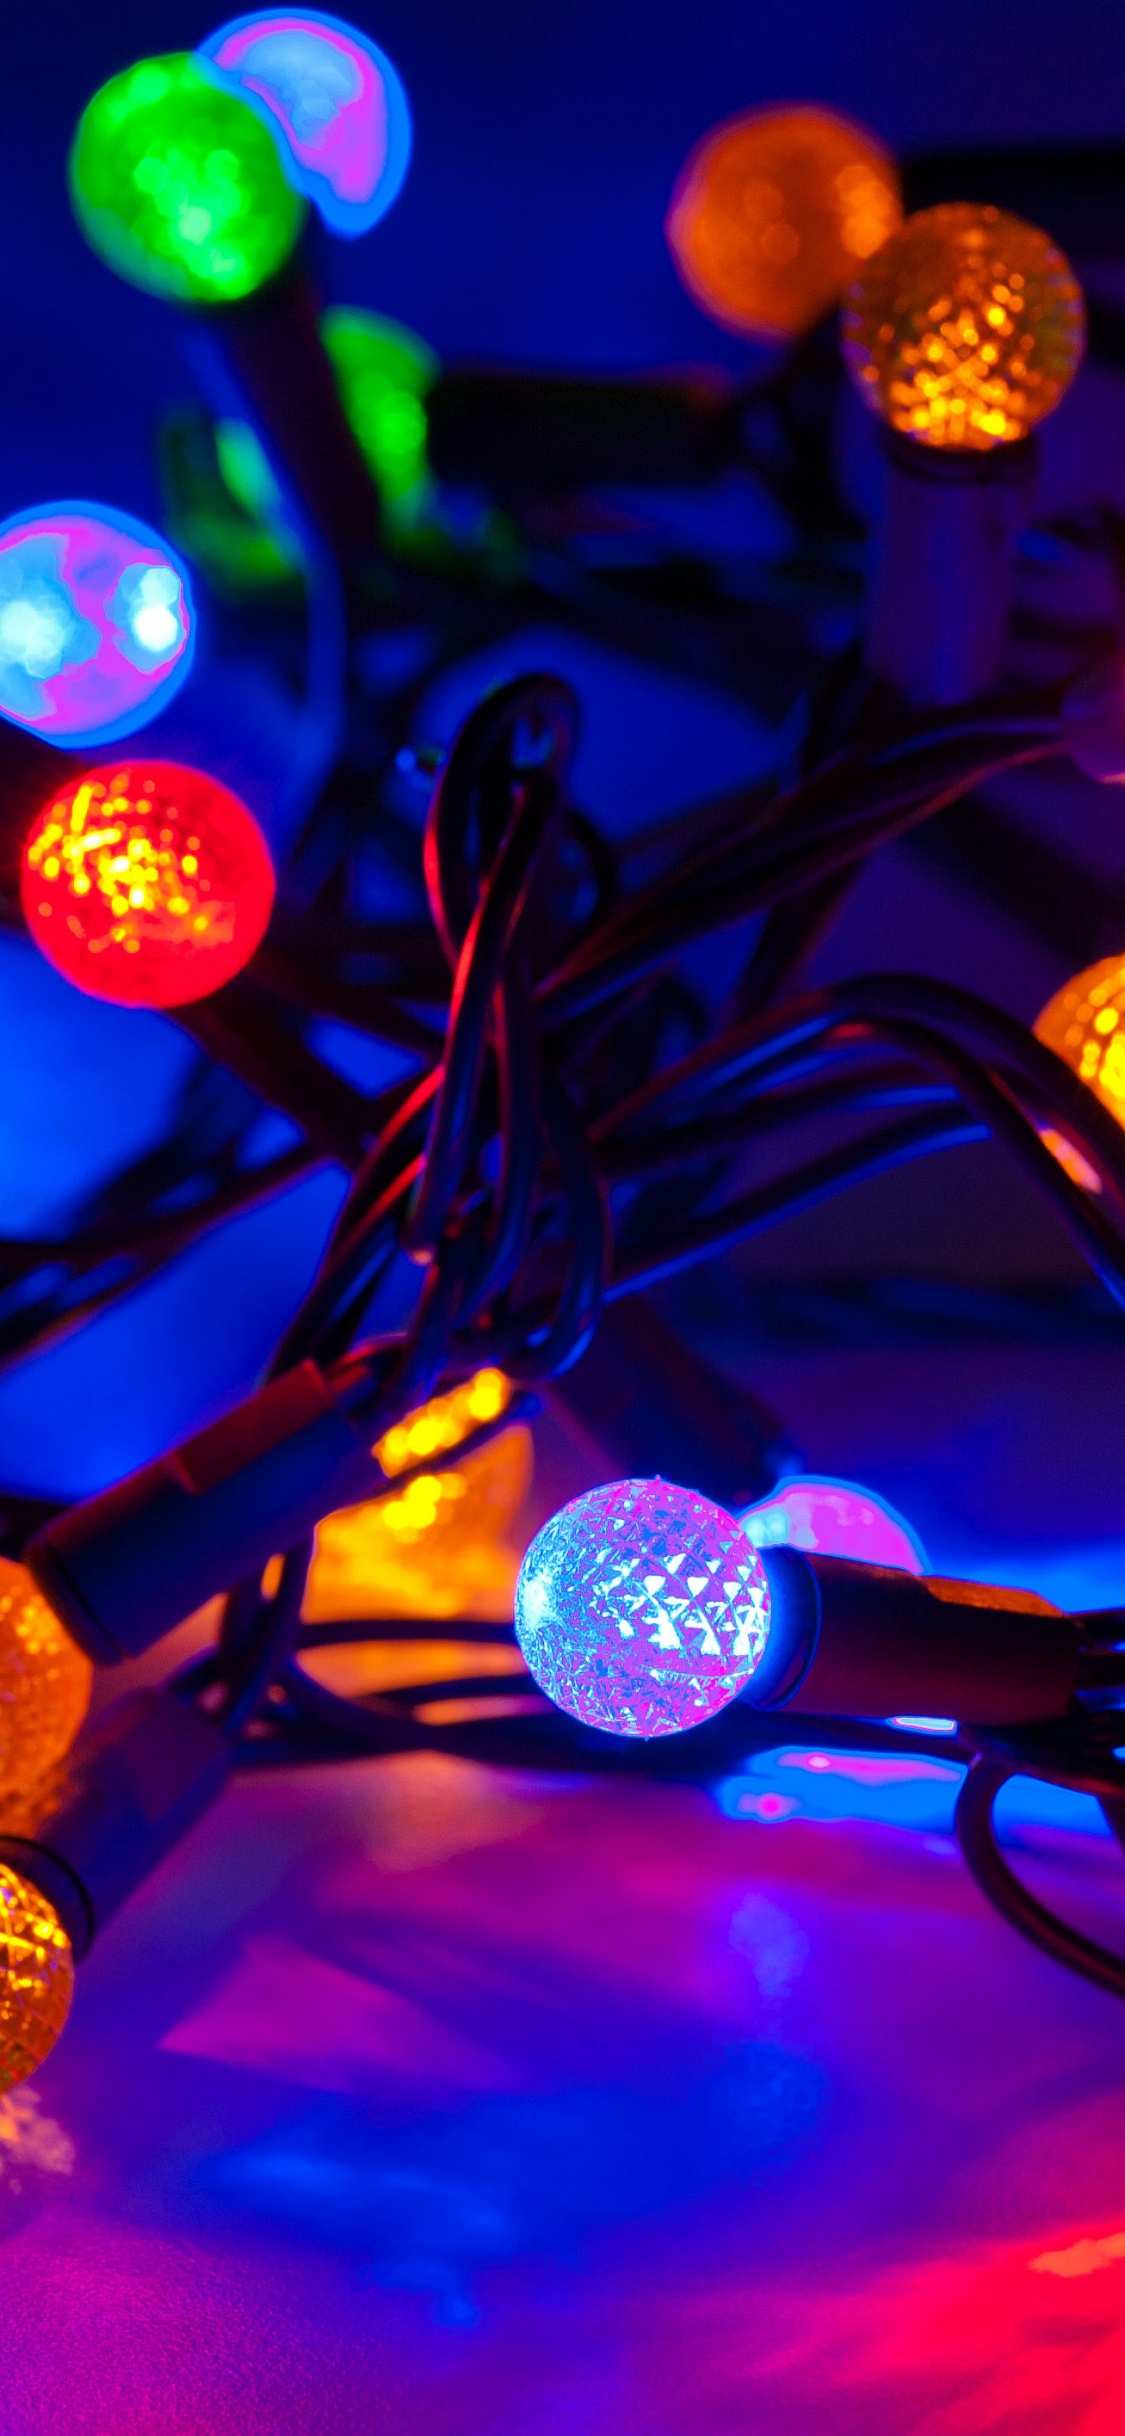 圣诞彩灯, 圣诞节那天, 光, 圣诞装饰, 发光二极管 壁纸 1125x2436 允许